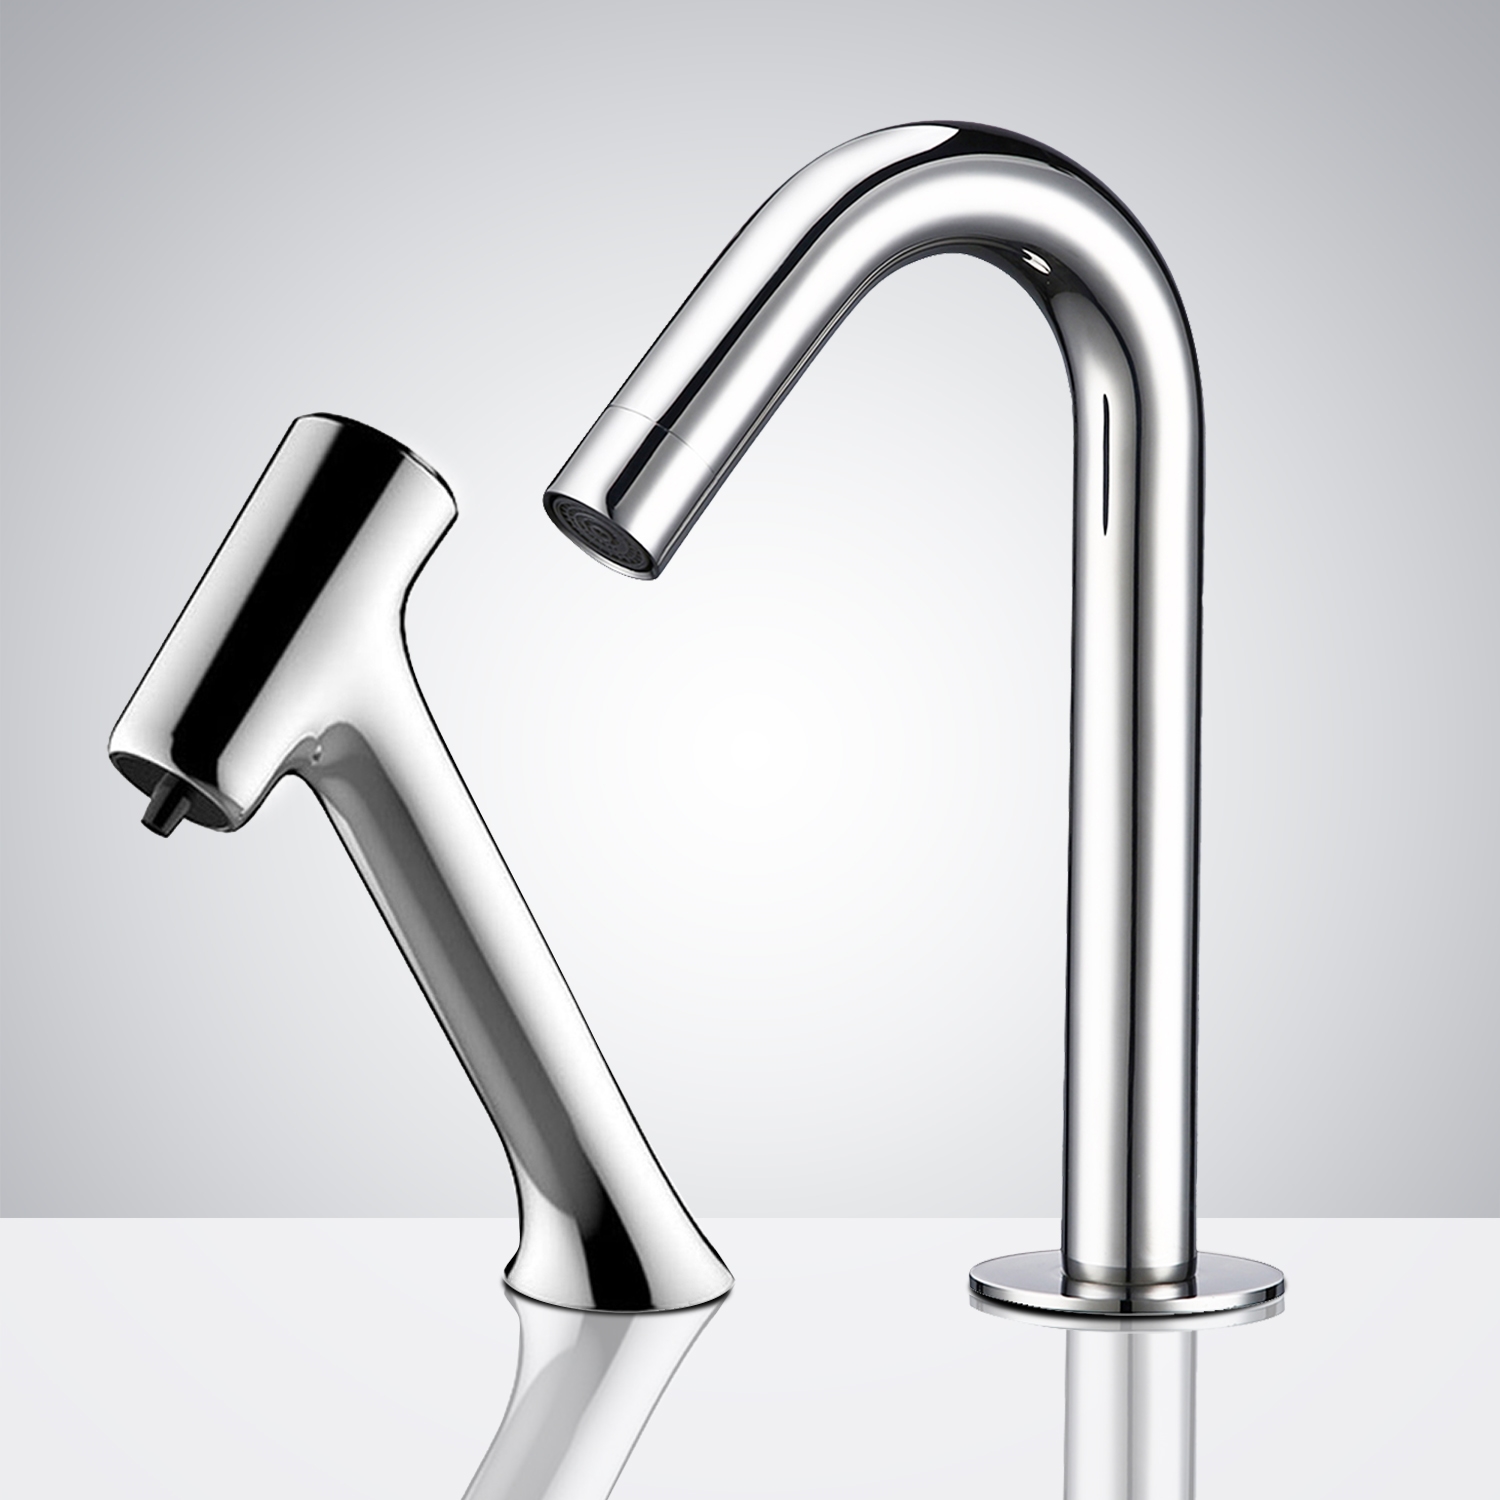 Fontana Deauville Chrome Motion Sensor Faucet & Automatic Soap Dispenser for Restrooms